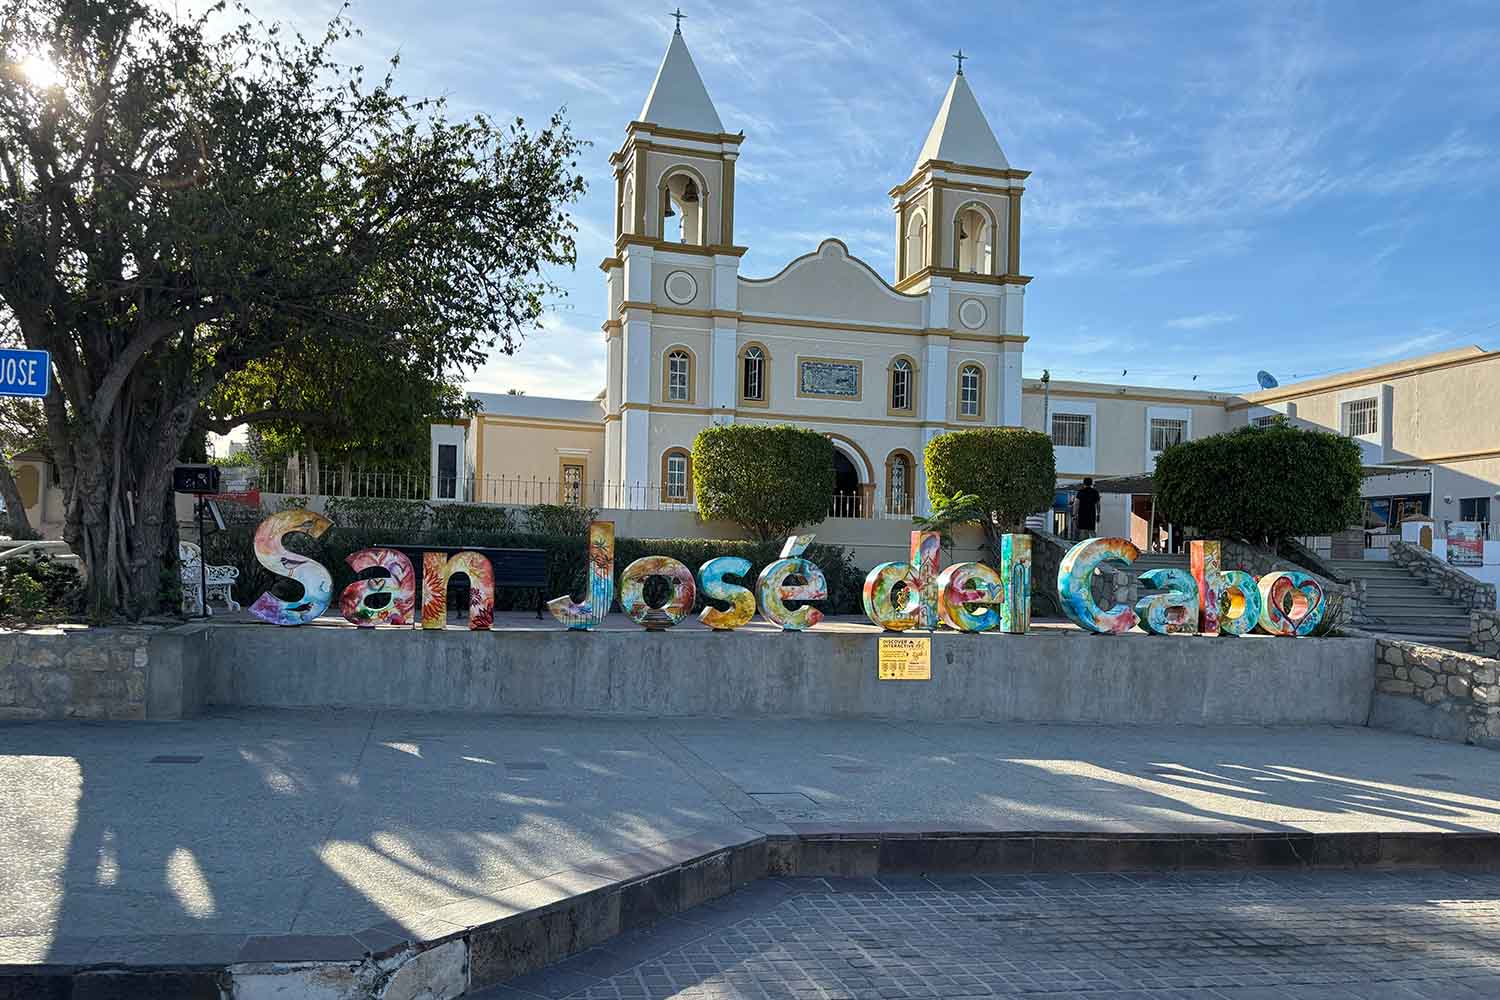 The town square at San José del Cabo